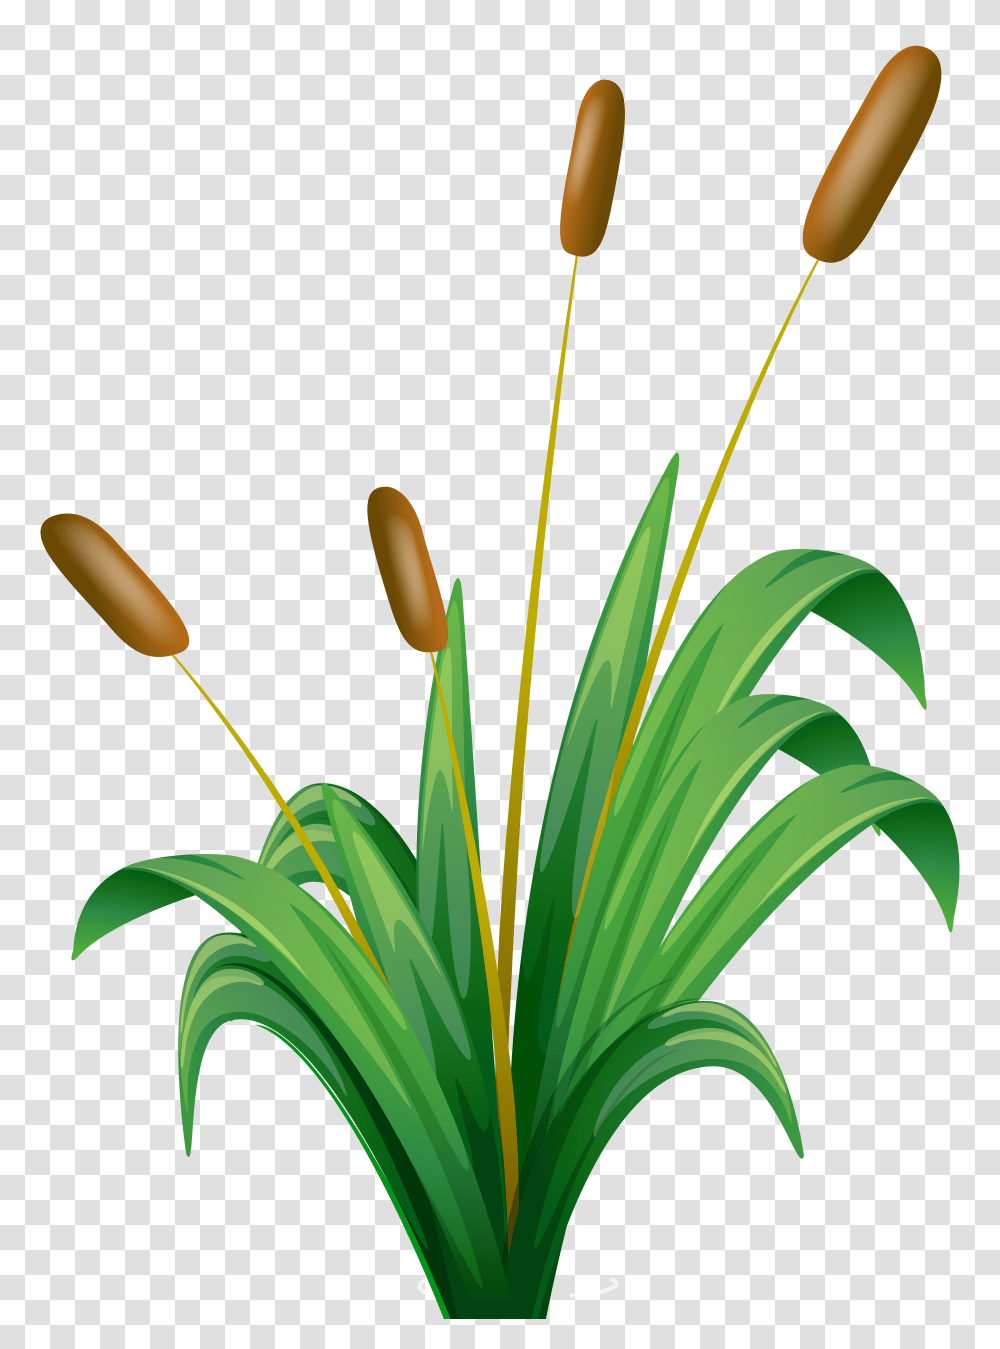 Bulrush Clip Art, Plant, Flower, Petal, Grass Transparent Png